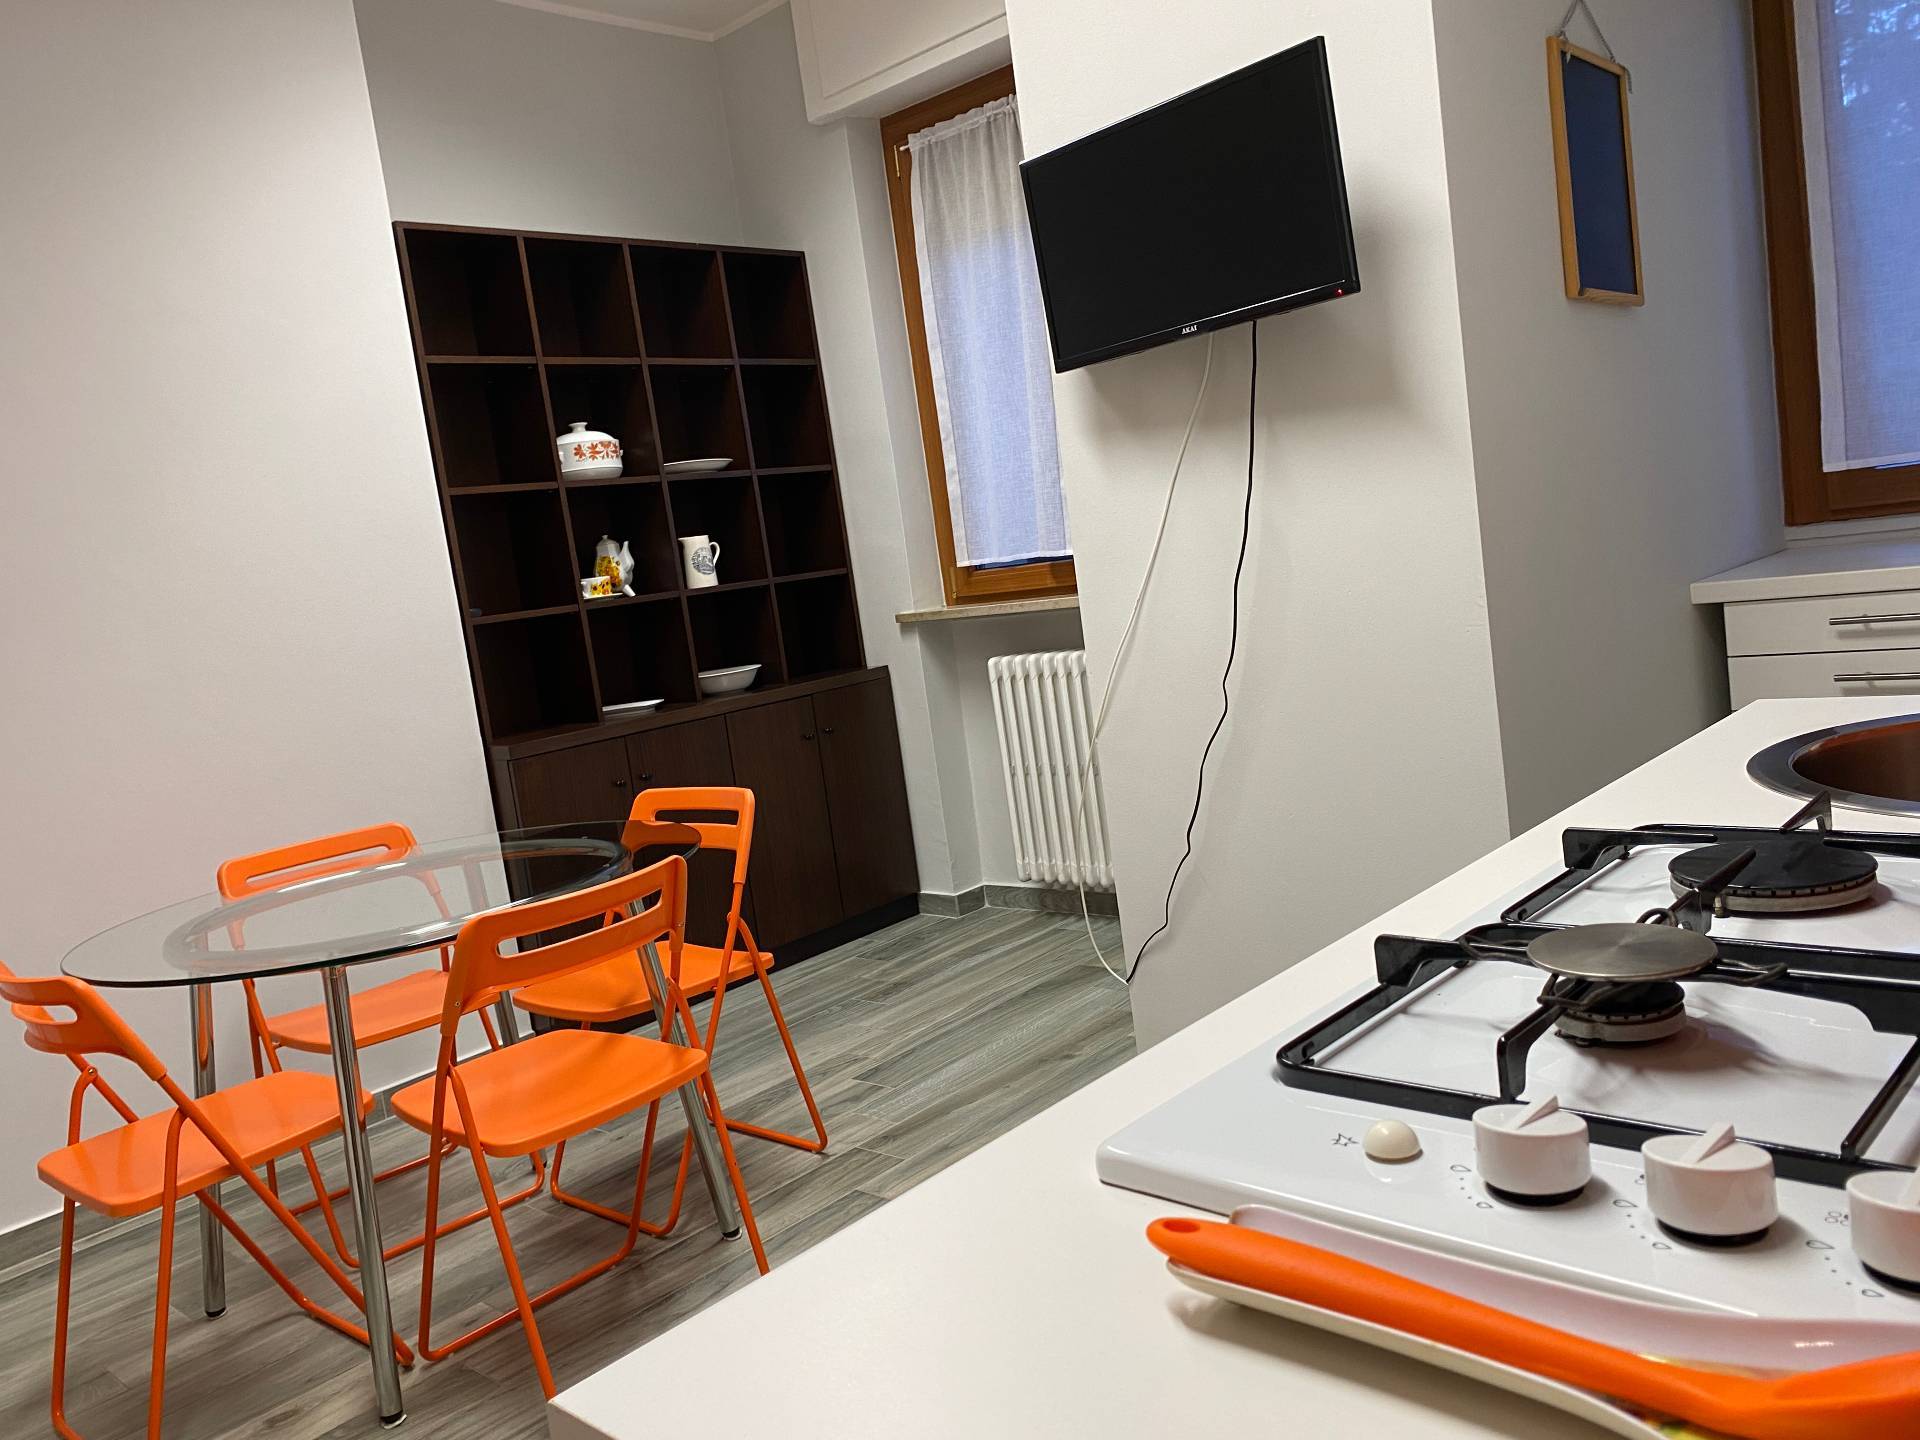 Appartamento in affitto a Novara, 2 locali, zona Zona: Centro, prezzo € 450 | CambioCasa.it